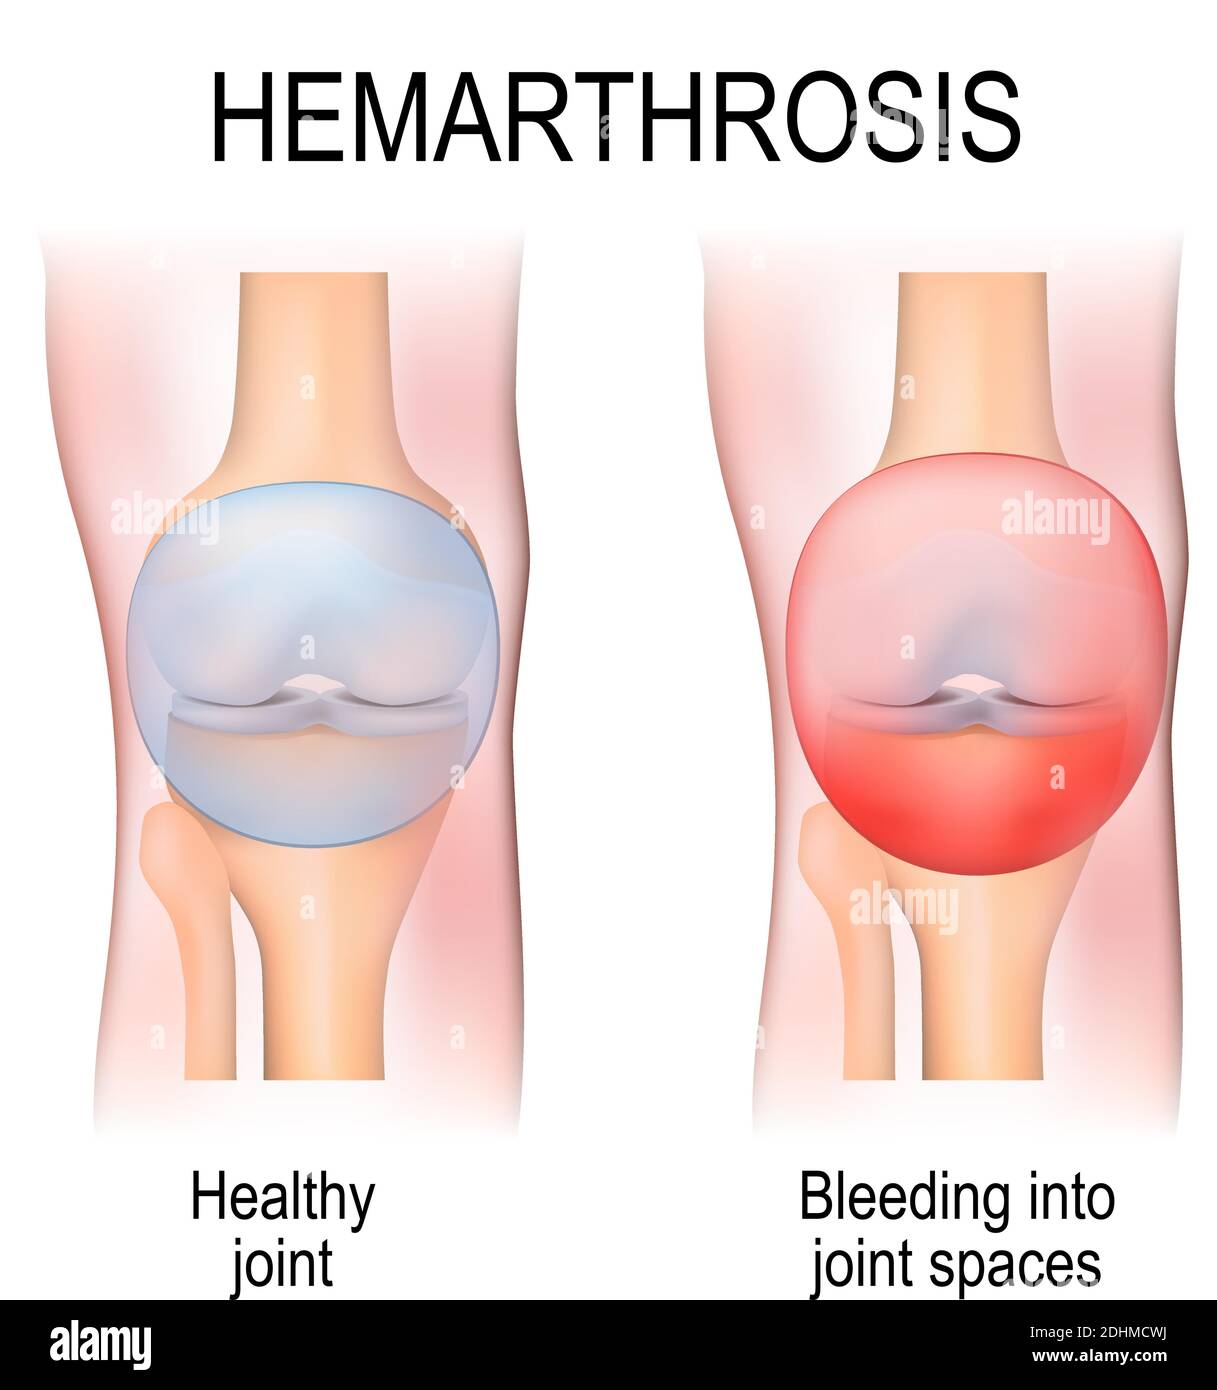 L'hémarthrose (hémarthrose) est un saignement dans les espaces articulaires. Anatomie humaine. Deux articulations du genou : en bonne santé et avec blessure Illustration de Vecteur